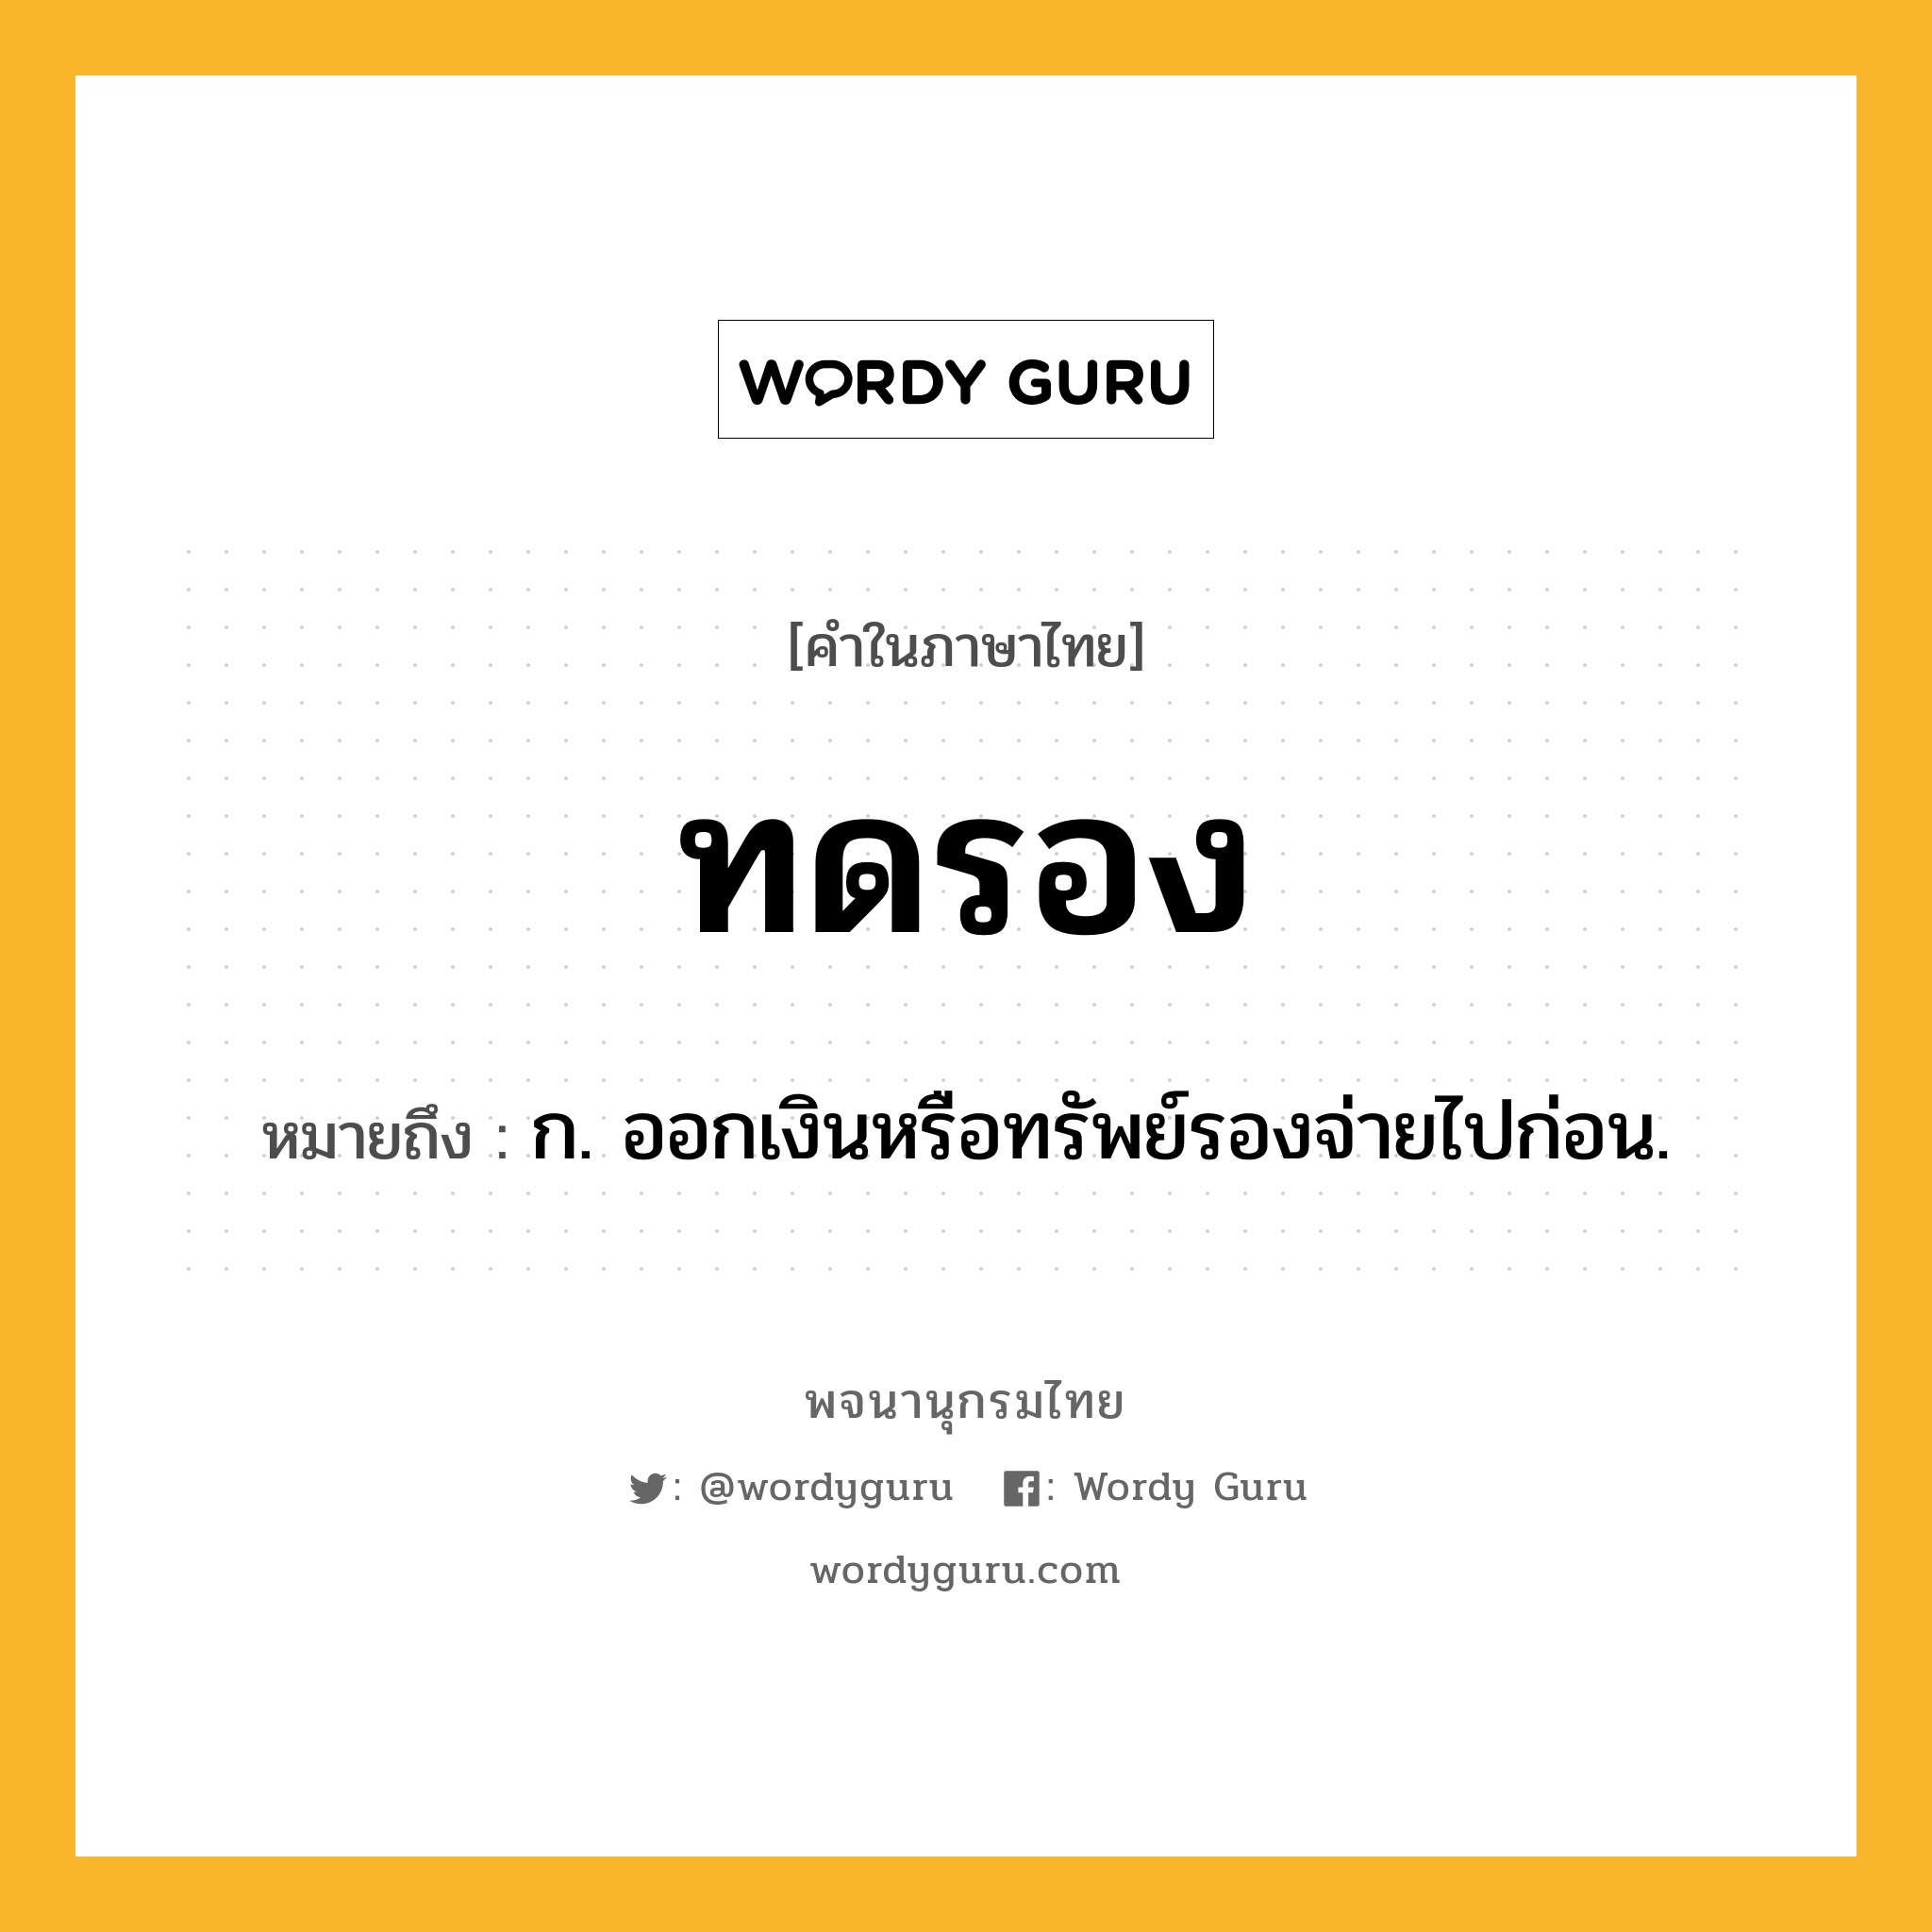 ทดรอง หมายถึงอะไร?, คำในภาษาไทย ทดรอง หมายถึง ก. ออกเงินหรือทรัพย์รองจ่ายไปก่อน.